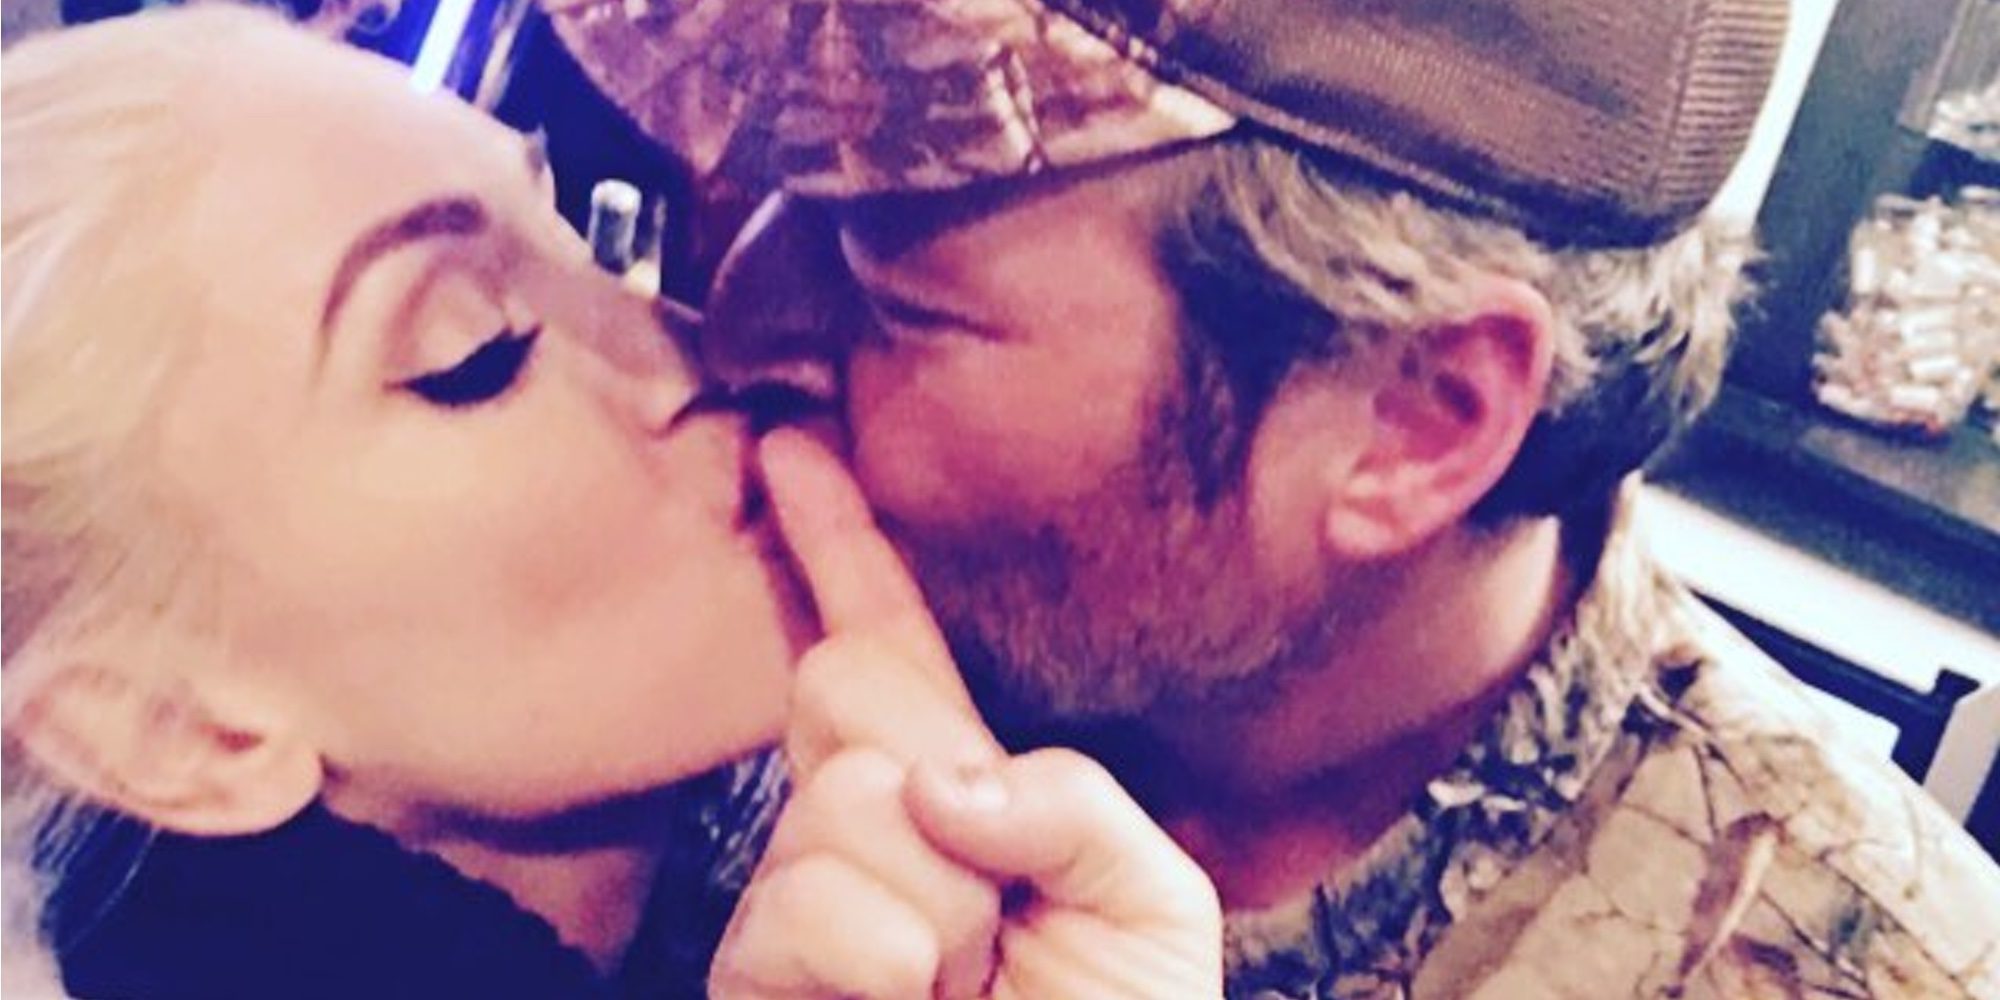 Gwen Stefani y Blake Shelton se dan un tierno beso en la celebración de Acción de Gracias